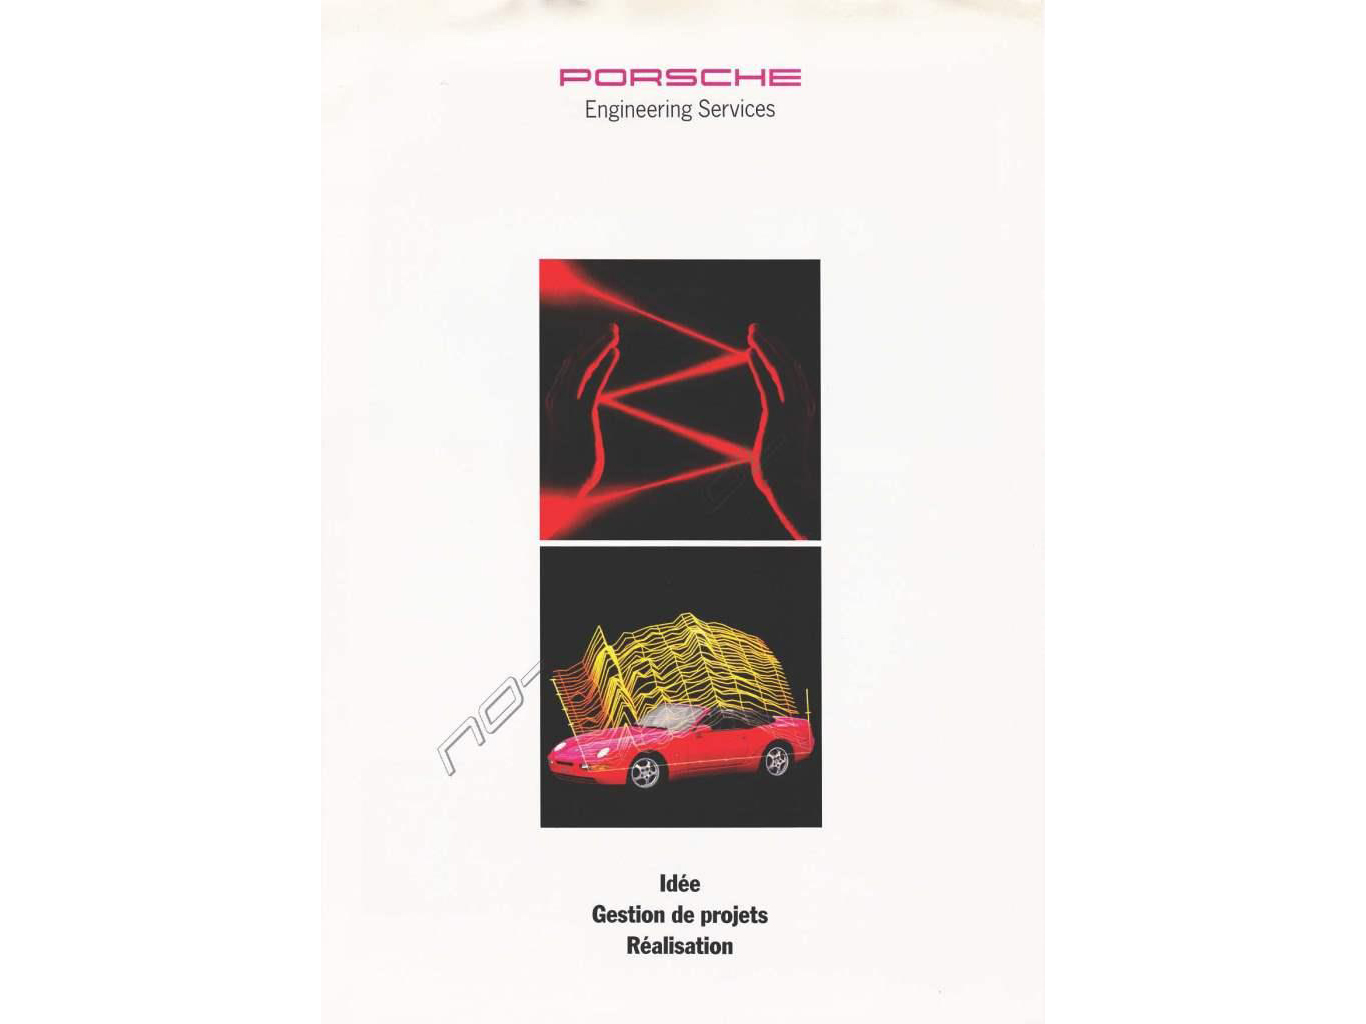 Porsche_Literature_Engineering_1993